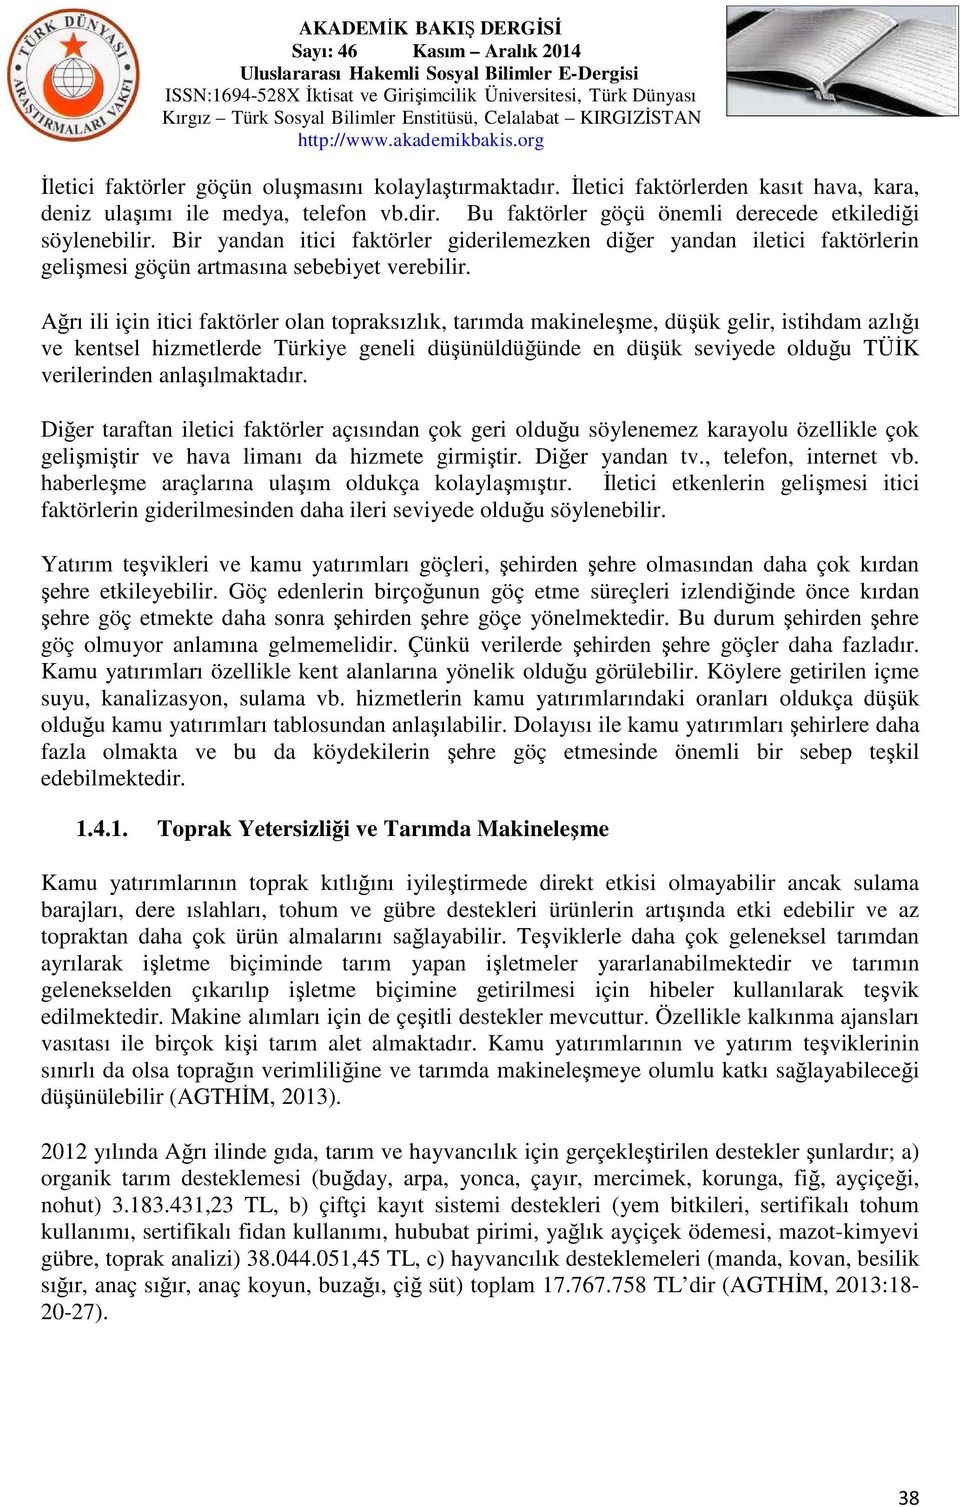 Ağrı ili için itici faktörler olan topraksızlık, tarımda makineleşme, düşük gelir, istihdam azlığı ve kentsel hizmetlerde Türkiye geneli düşünüldüğünde en düşük seviyede olduğu TÜĐK verilerinden